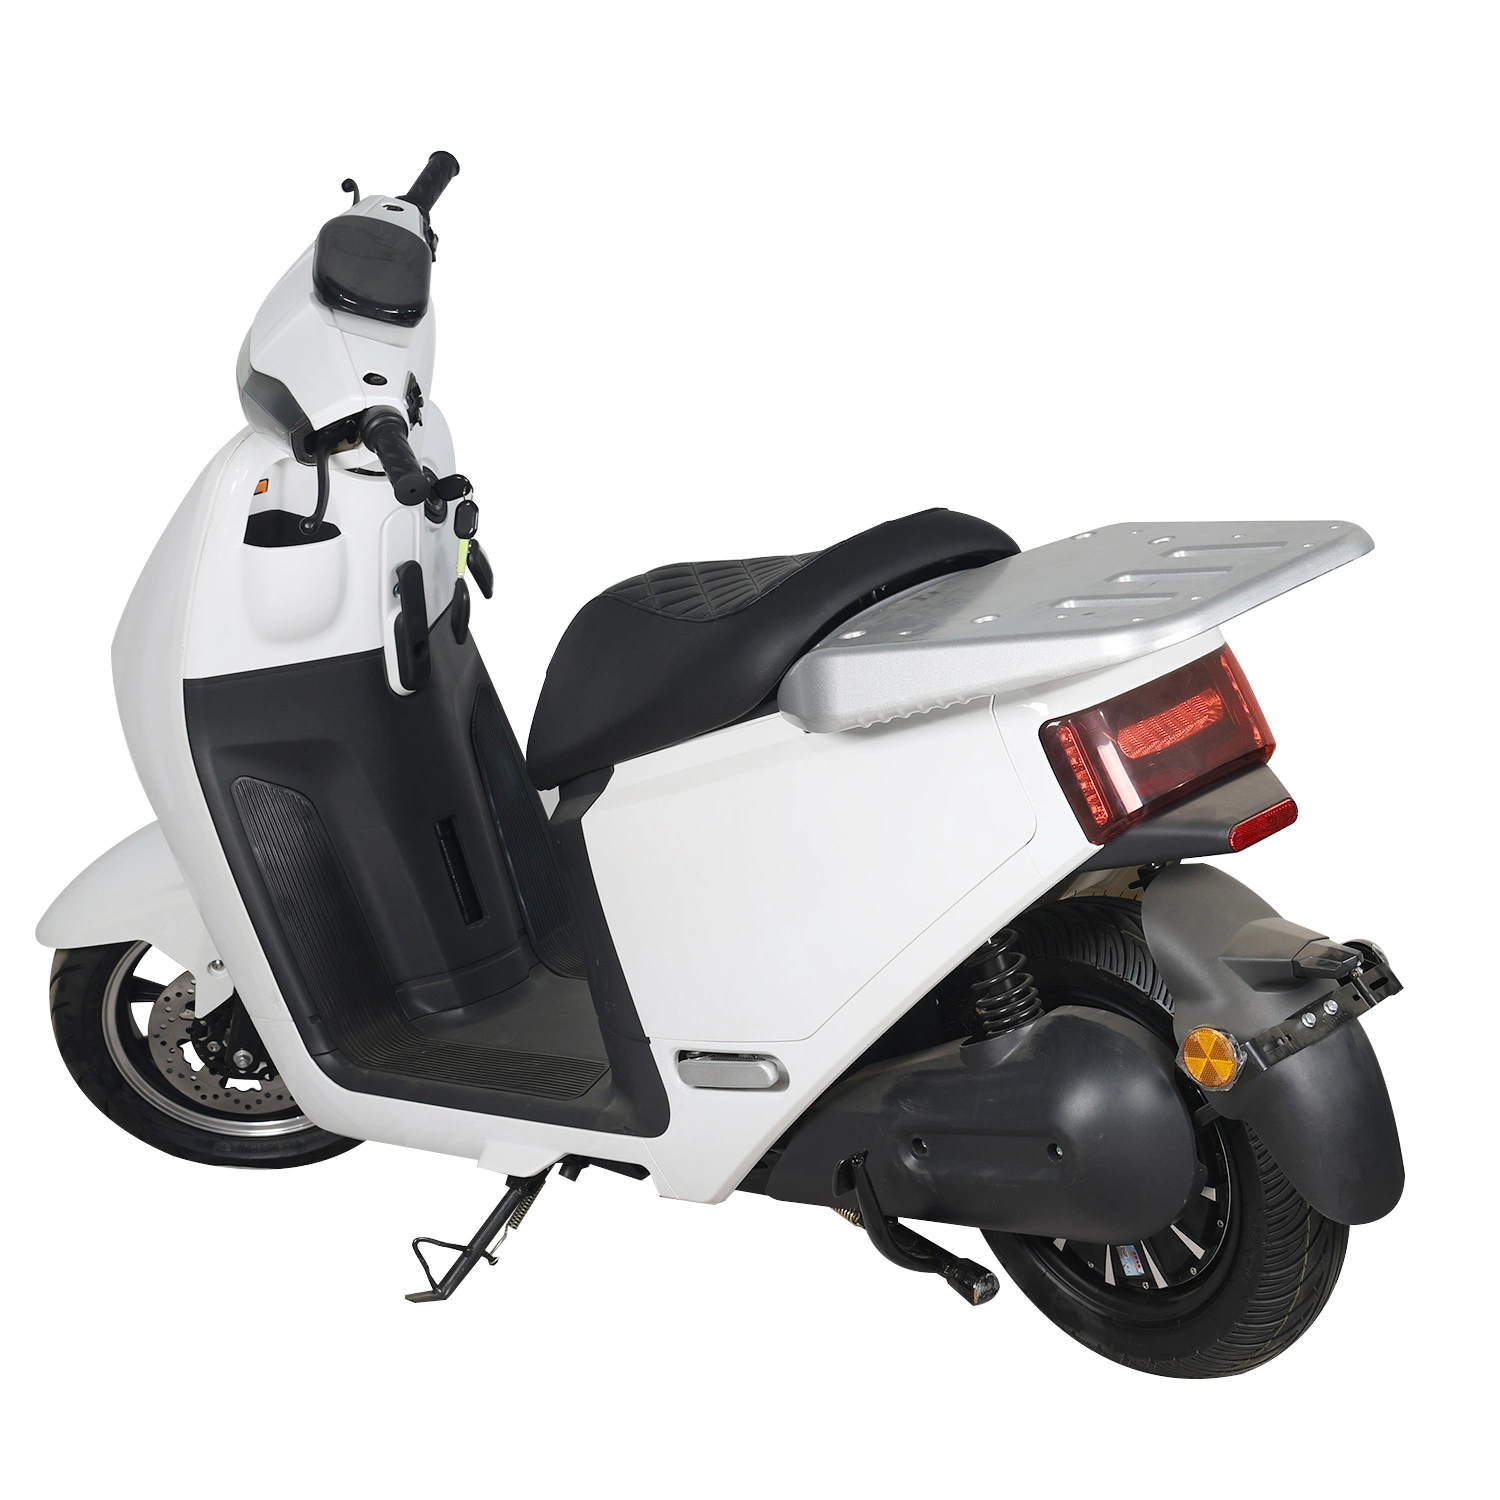 La meilleure qualité 72 V Batterie au Lithium deux roues scooter électrique adulte moto